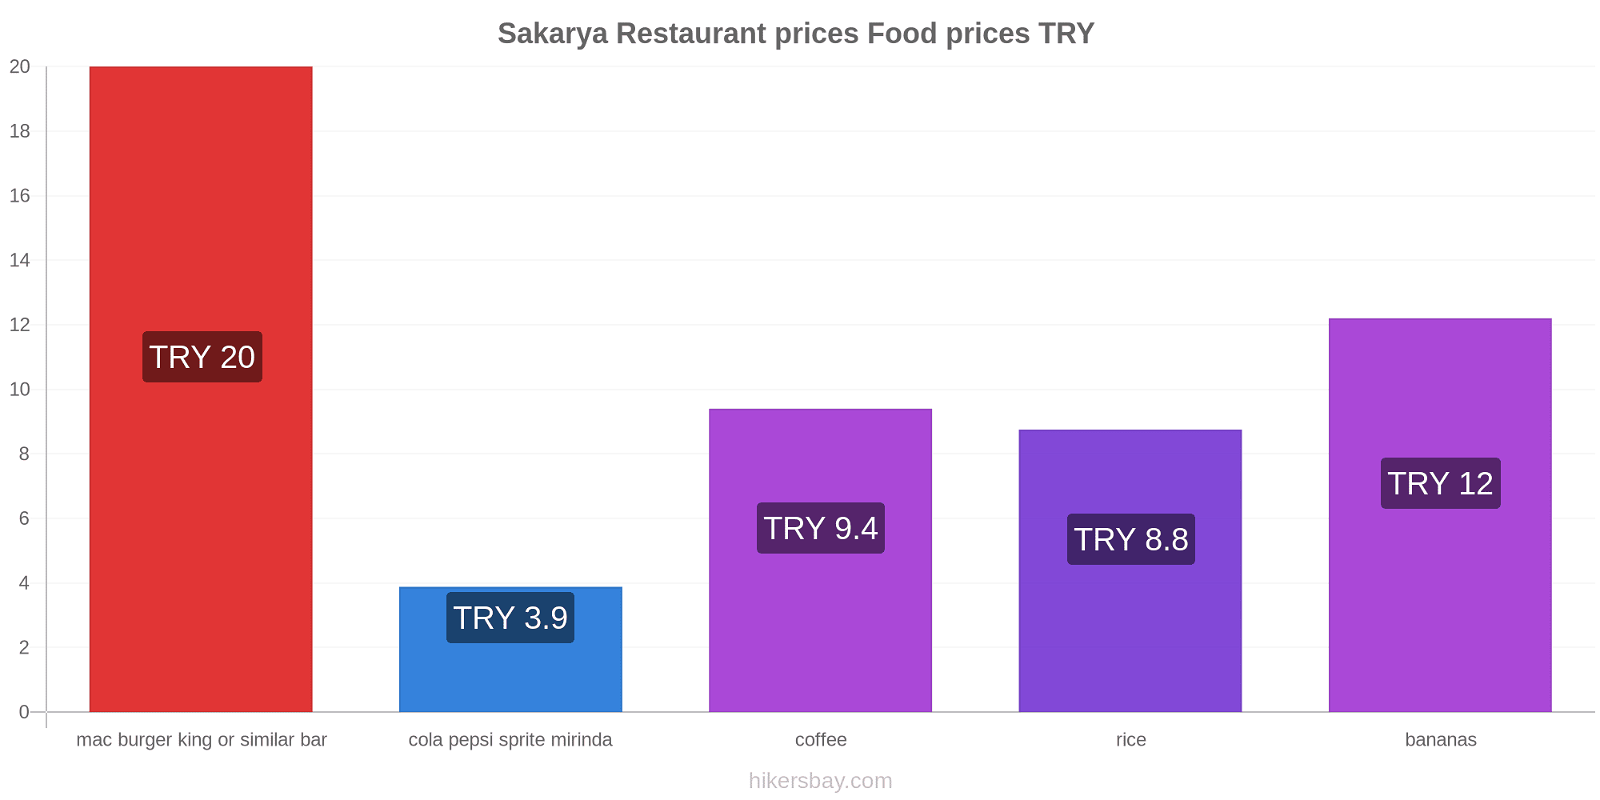 Sakarya price changes hikersbay.com